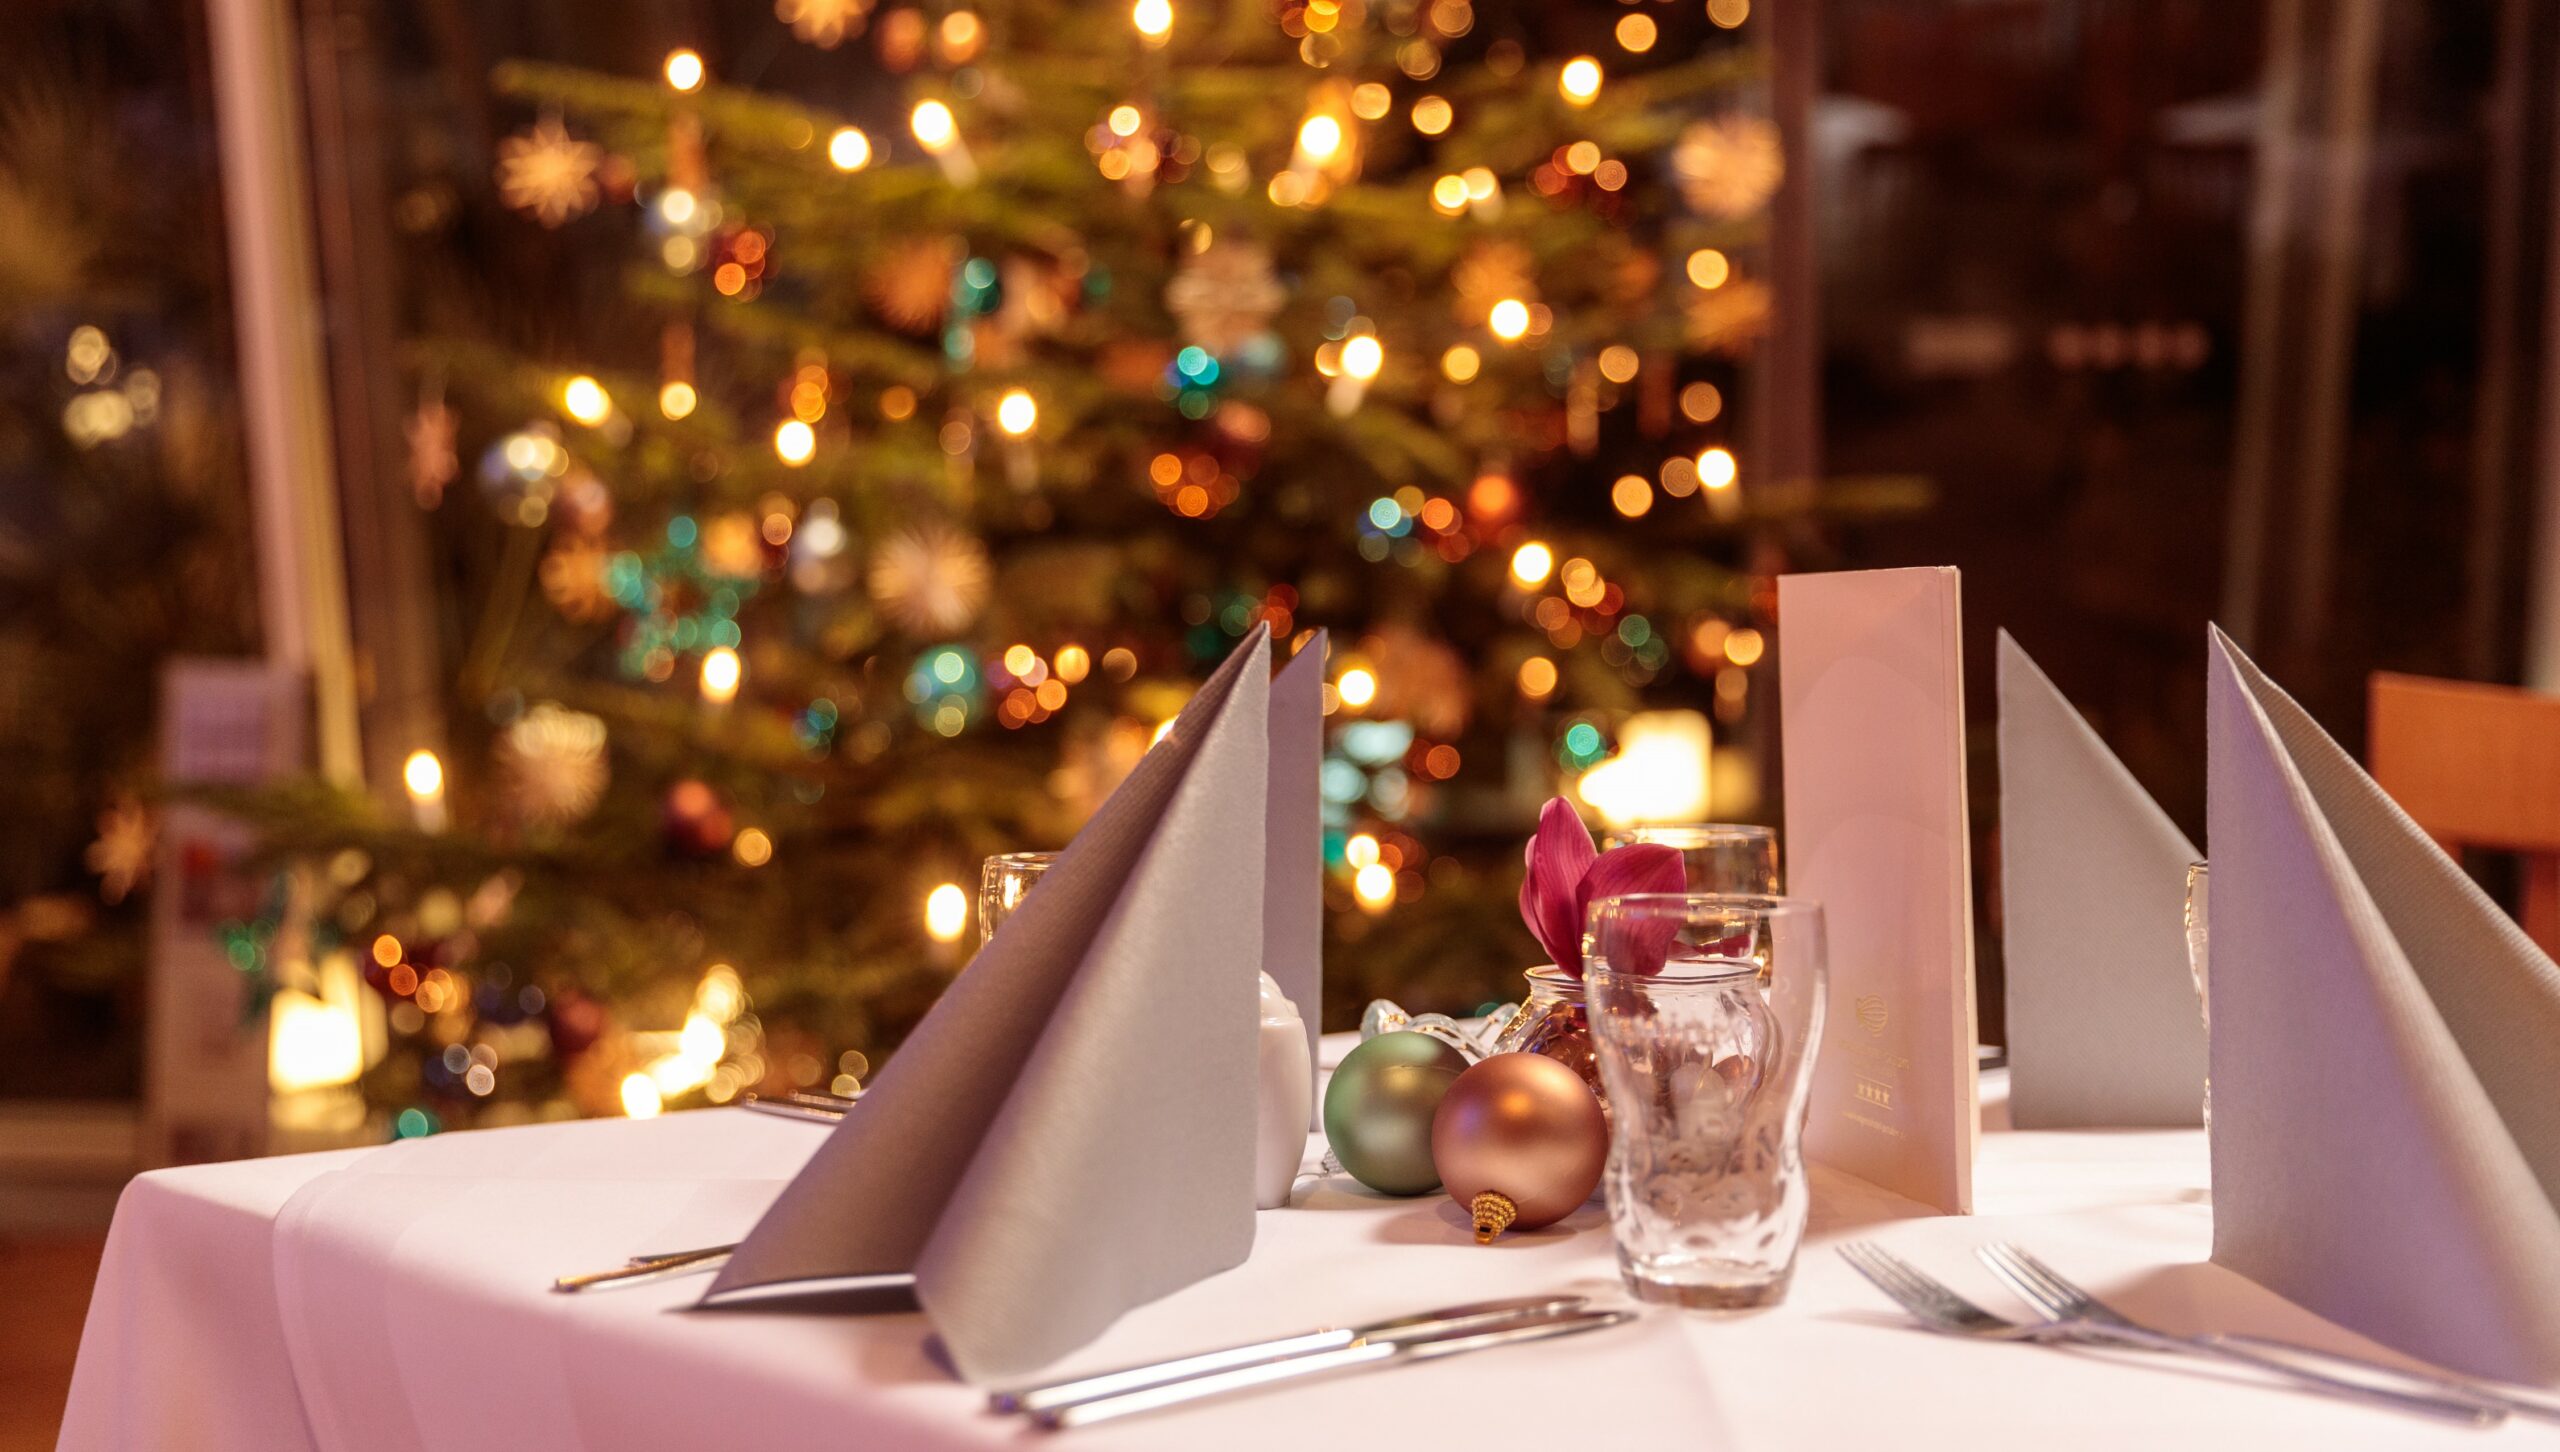 Winter-Weihnachten-Restaurant-Deko-scaled